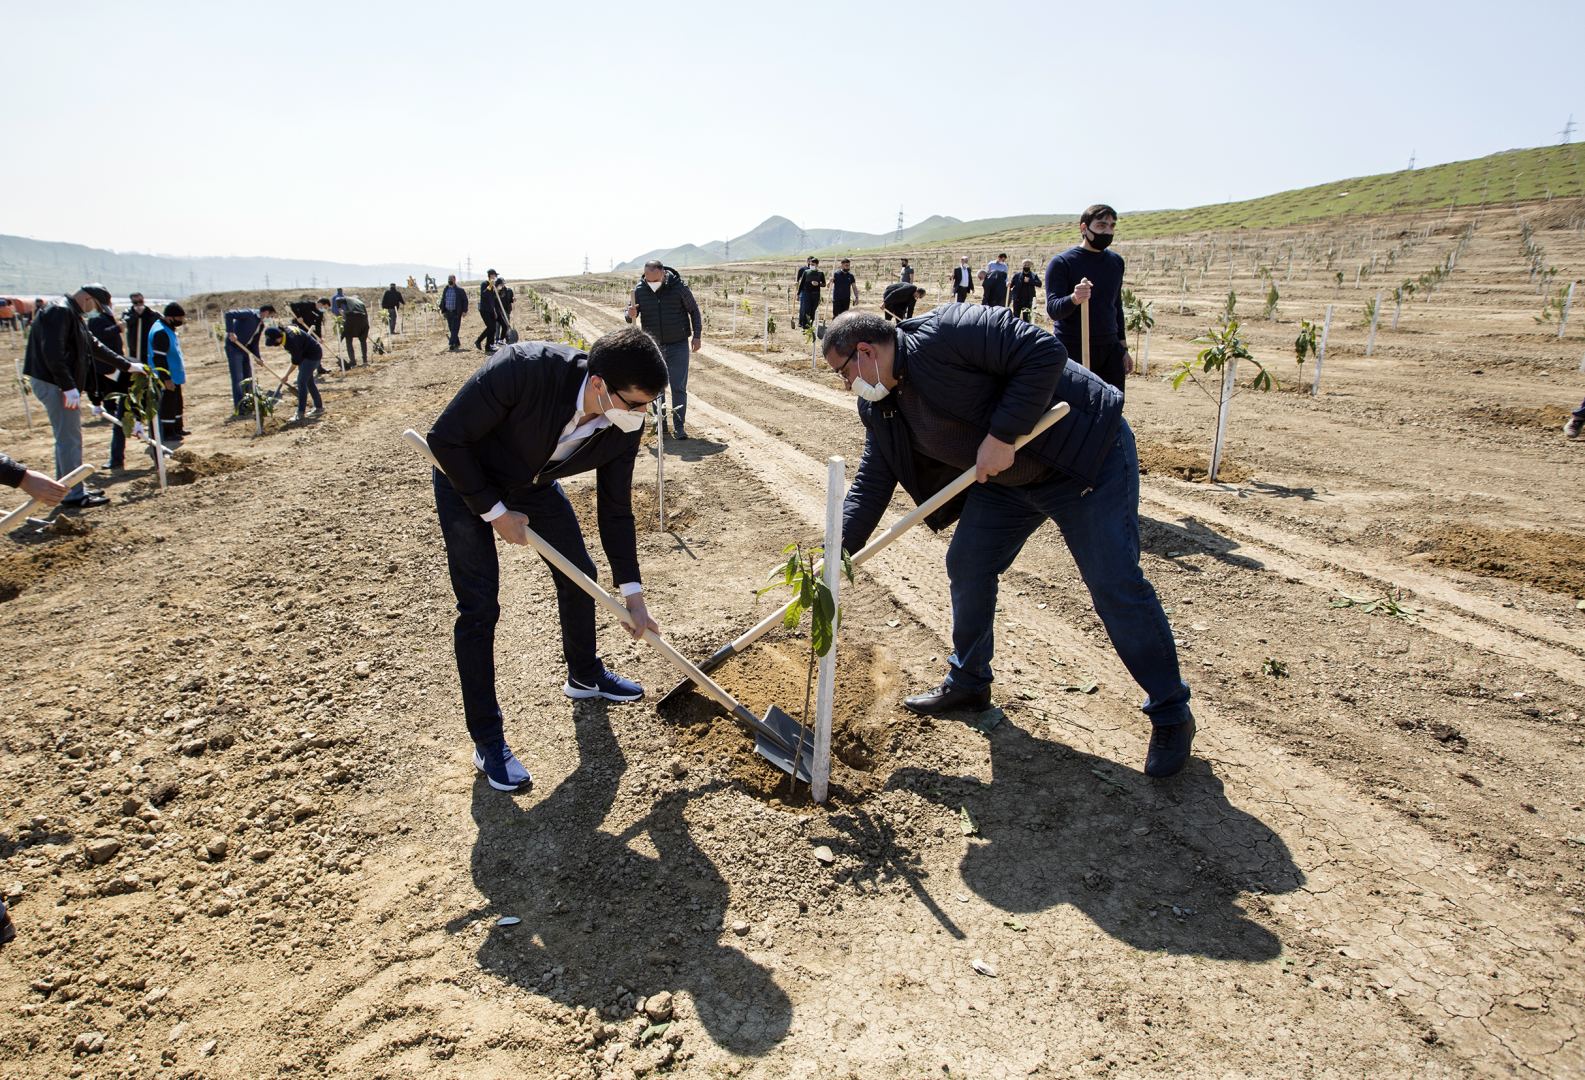 Азербайджанские таможенники присоединились к акции по посадке деревьев в рамках кампании "Зеленый марафон" (ФОТО)